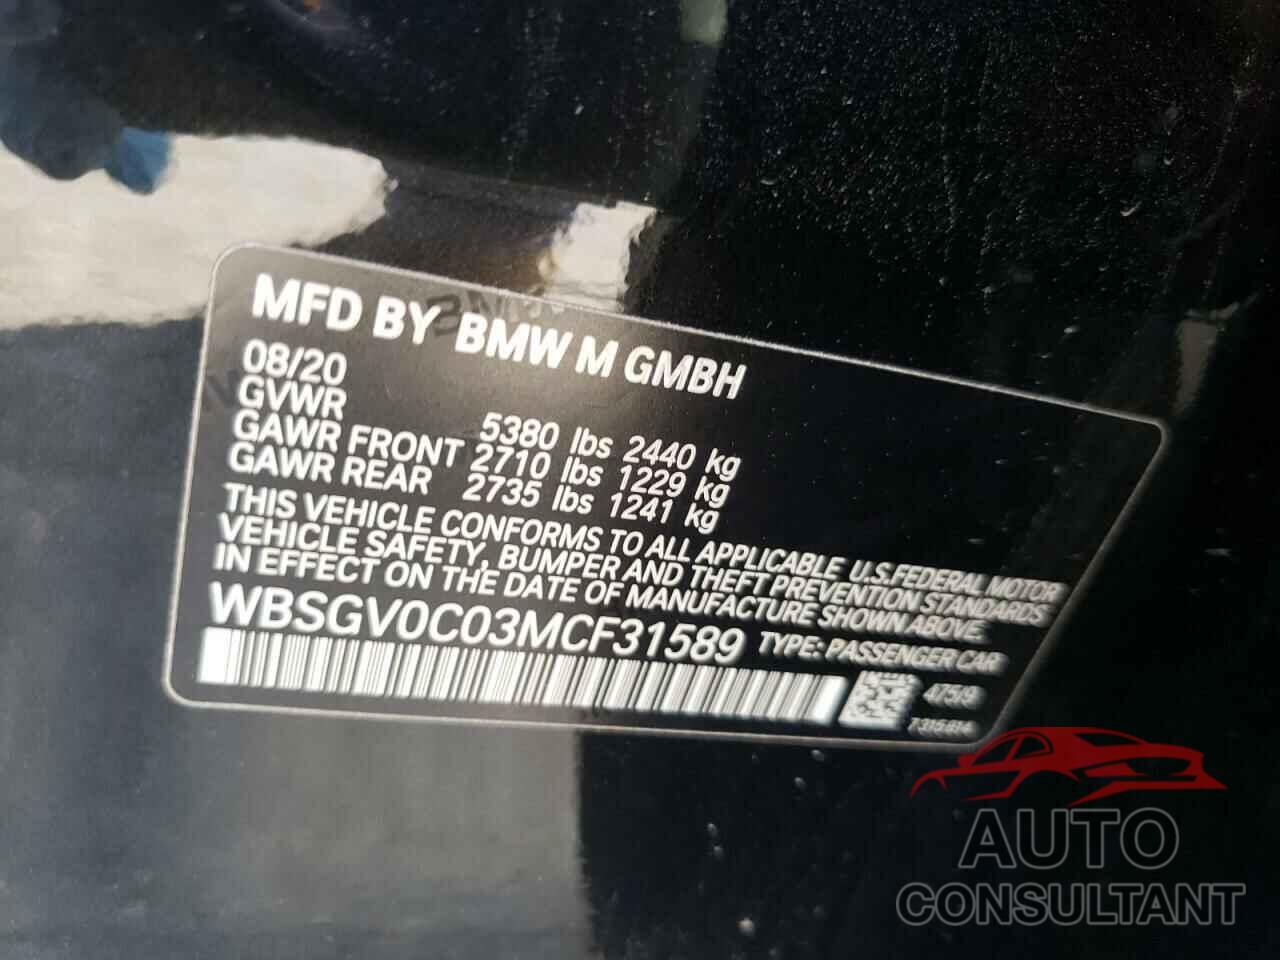 BMW M8 2021 - WBSGV0C03MCF31589